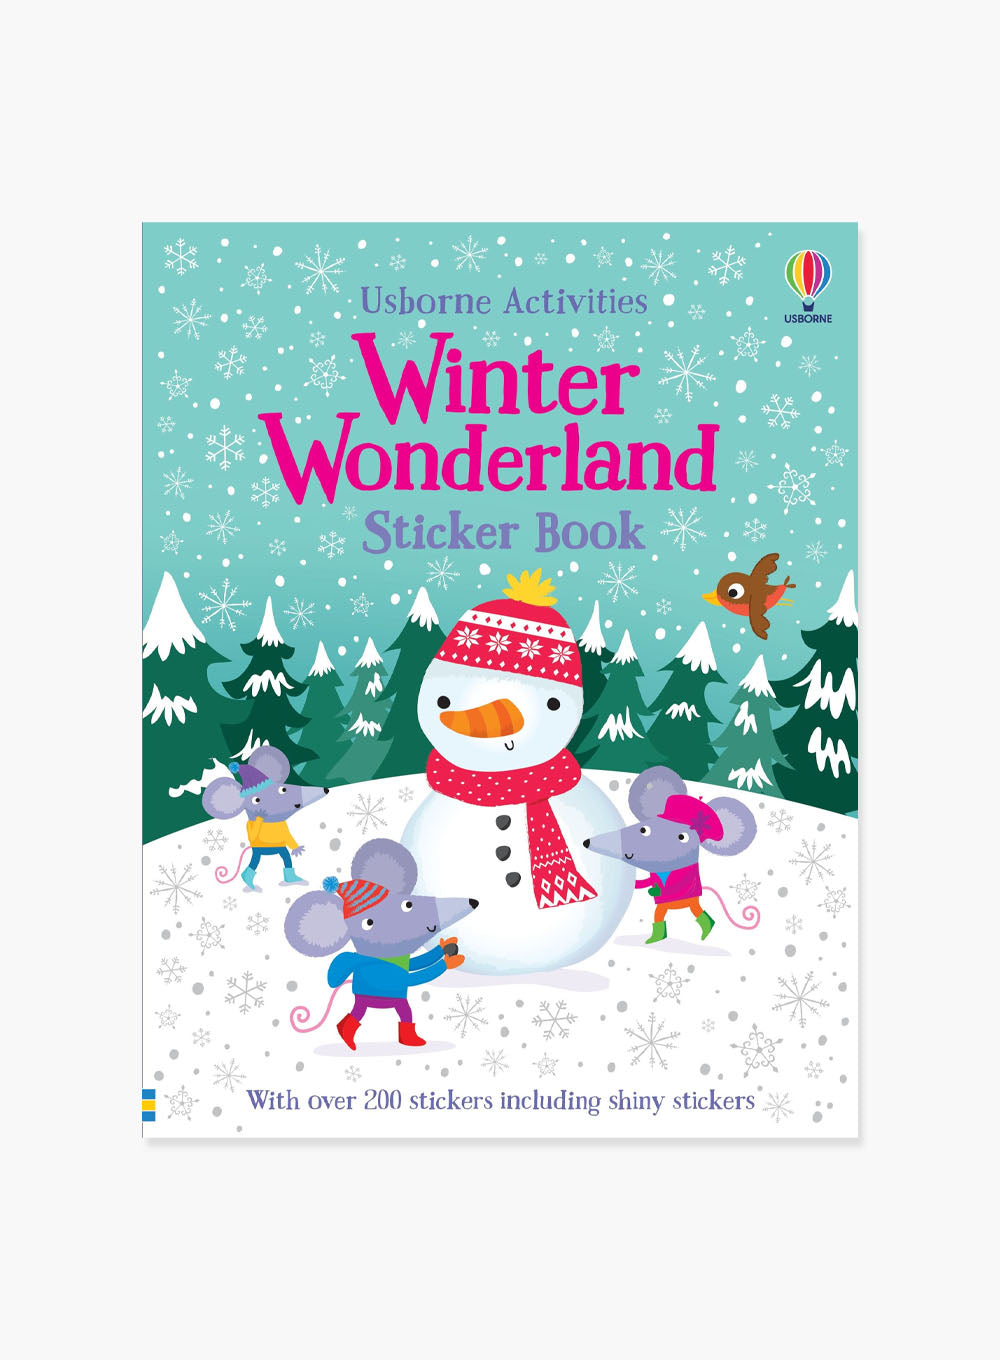 Usborne's Winter Wonderland Sticker Book